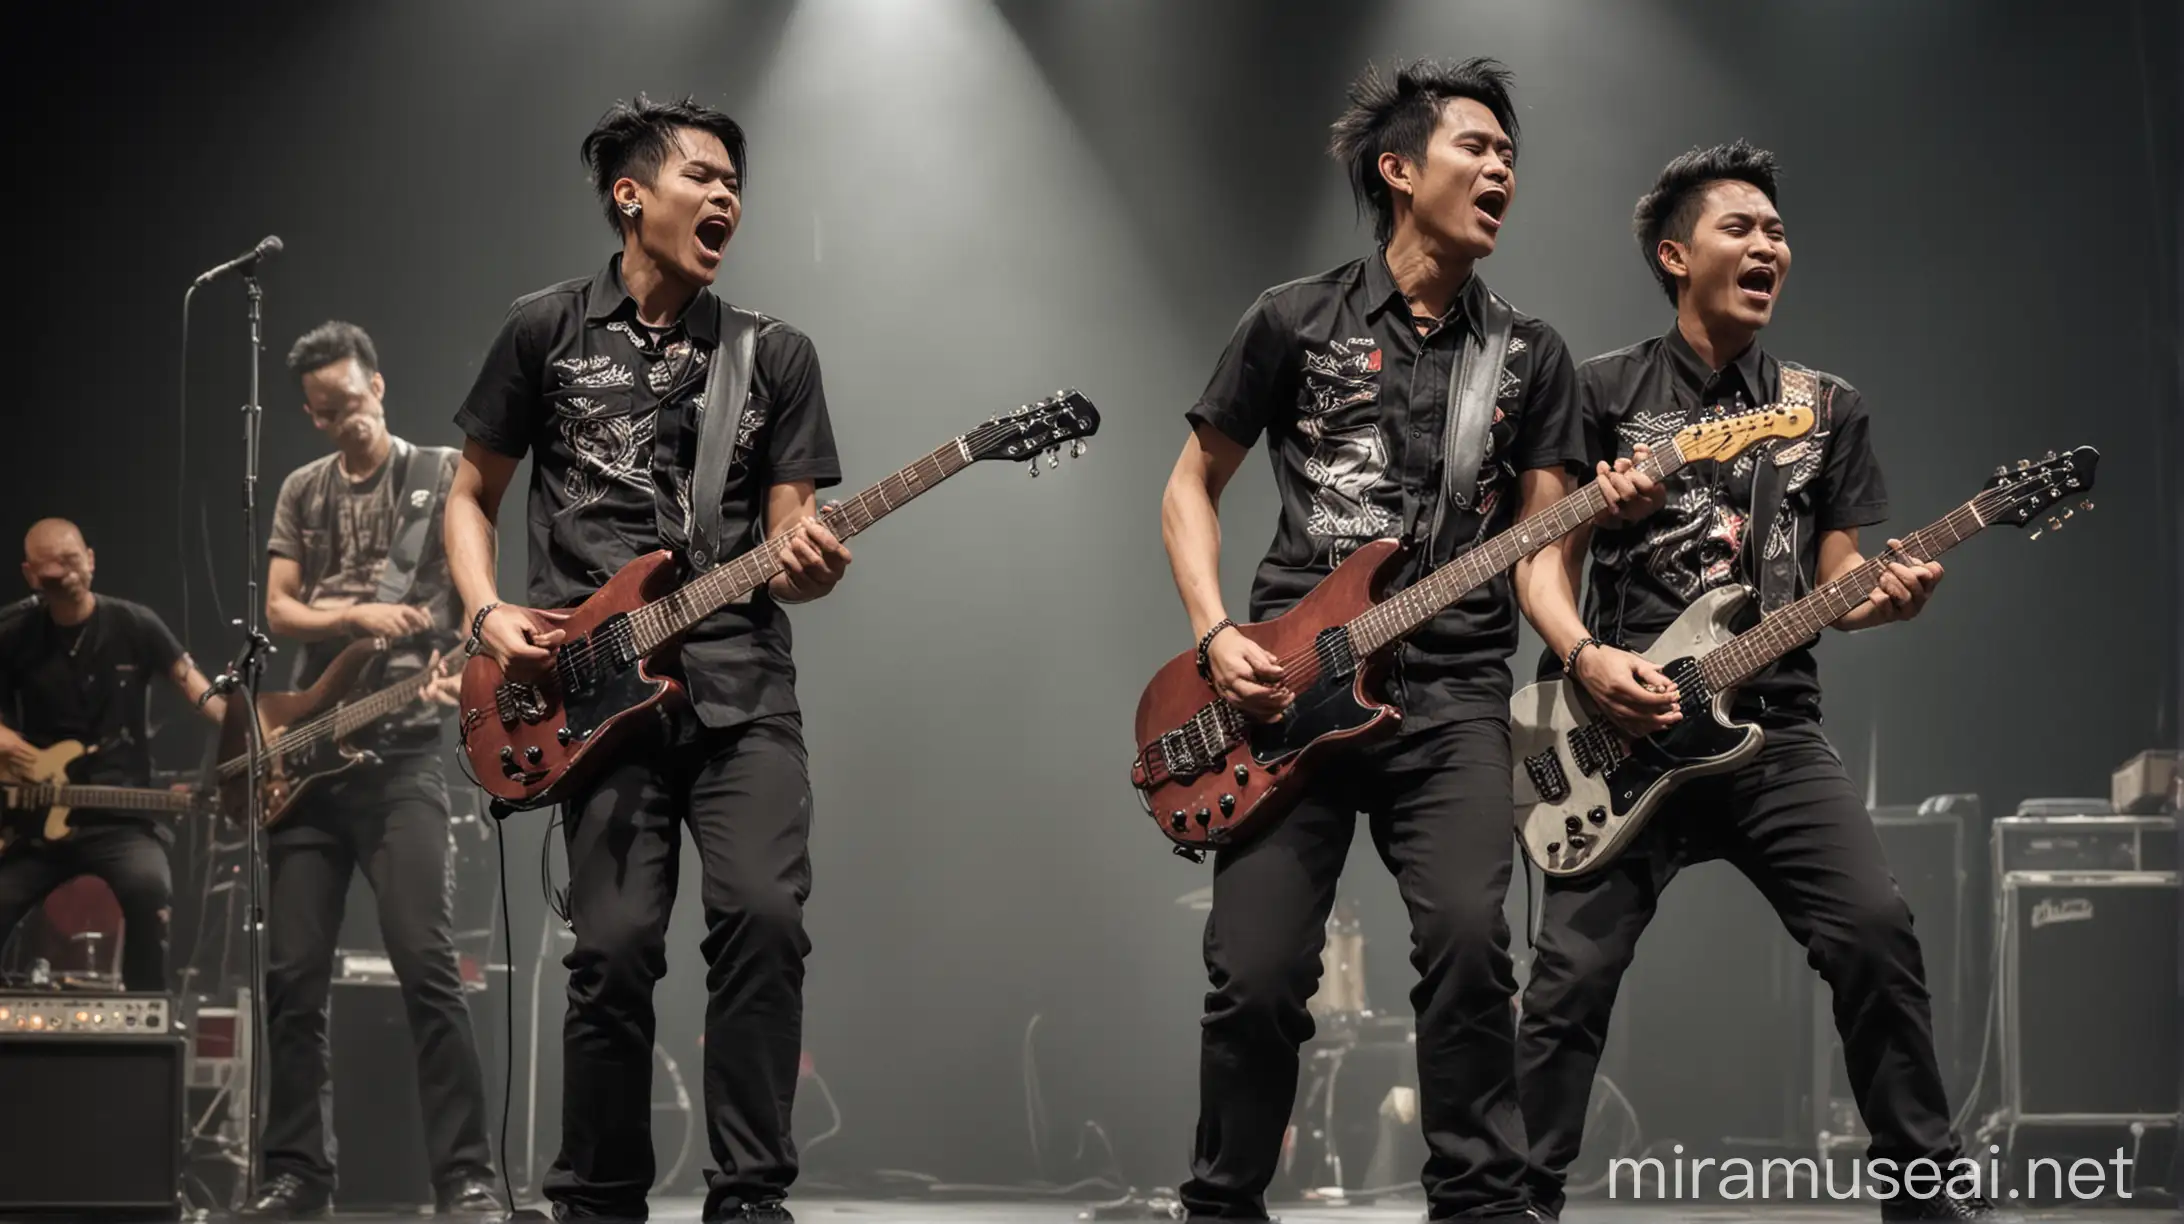 3 orang pria indonesia umur 30 tahun, rambut tipis, memakai baju ala rocker, celana ala rocker dan sepatu ala rocker, sedang bernyanyi dan bermain gitar di atas panggung